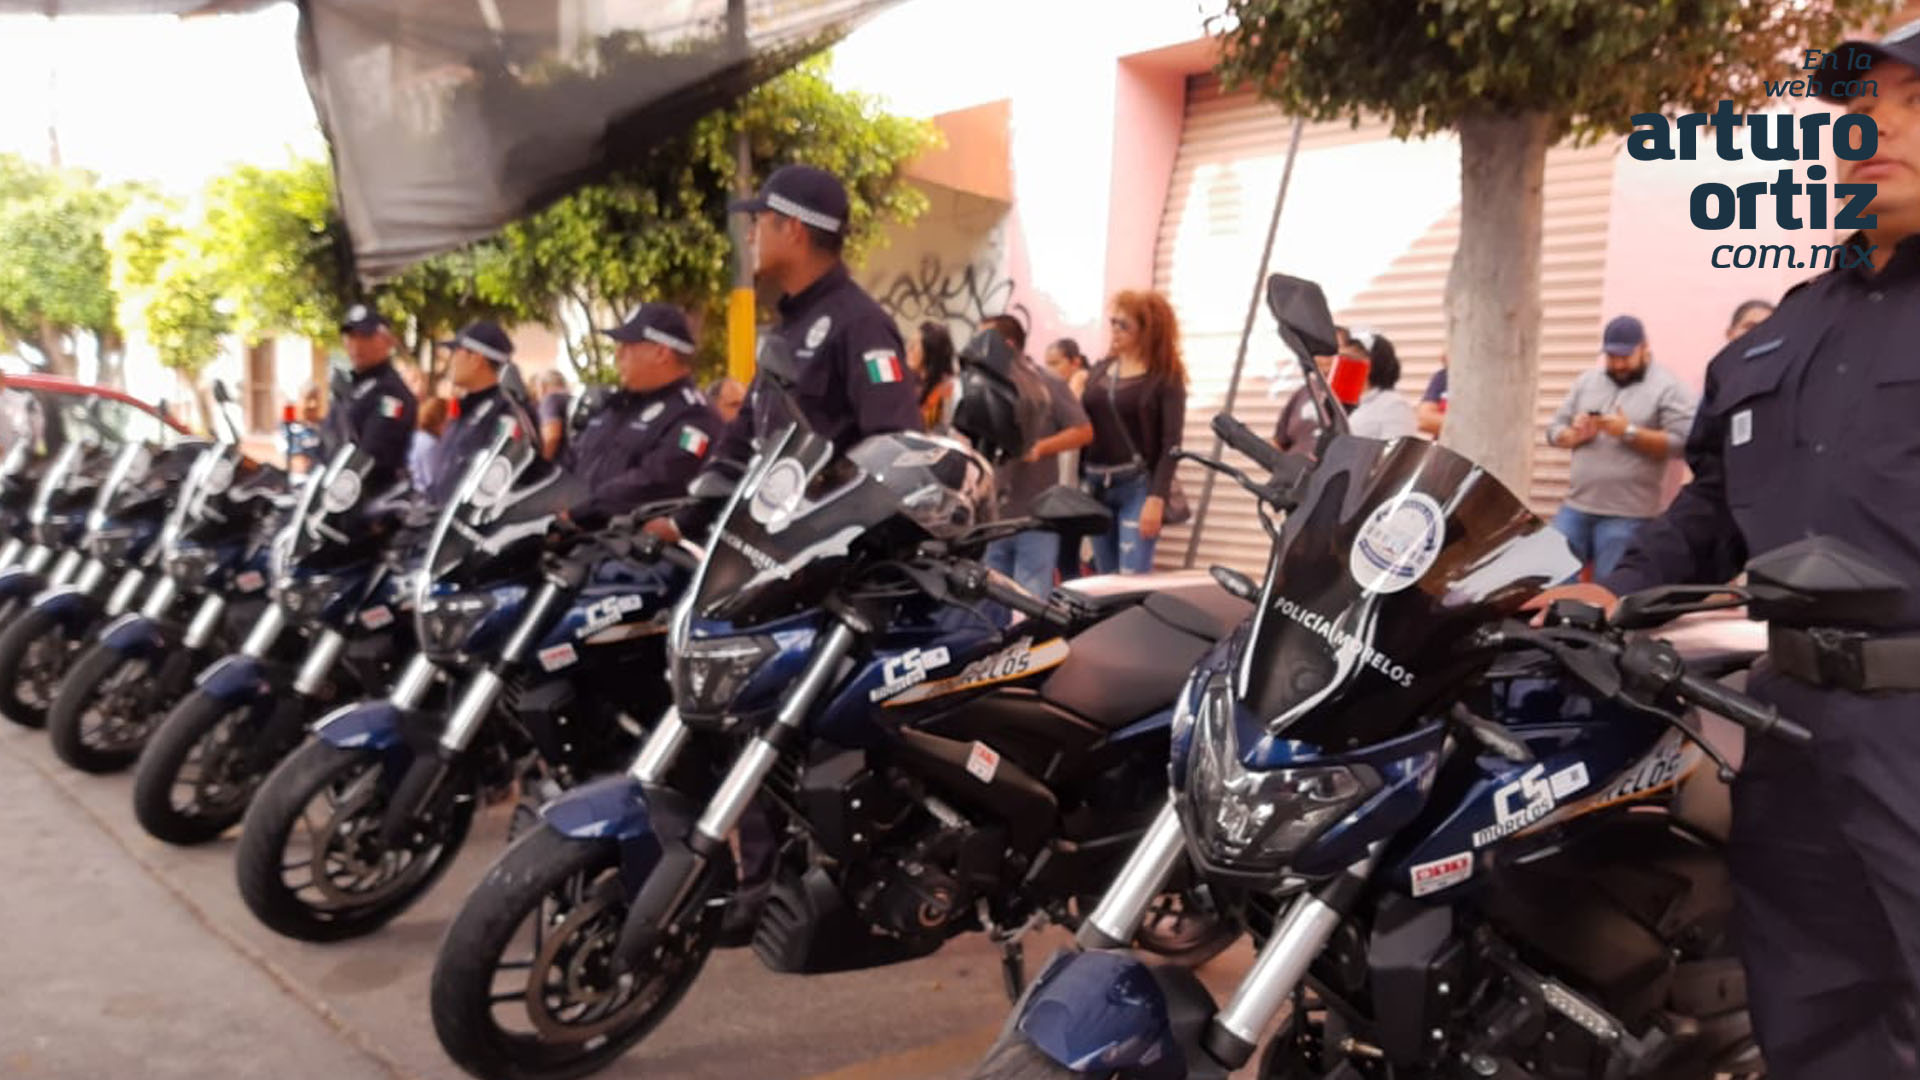 POLICÍA DE AXOCHIAPAN GANA AMPARO PARA RESGUARDARSE EN SU CASA